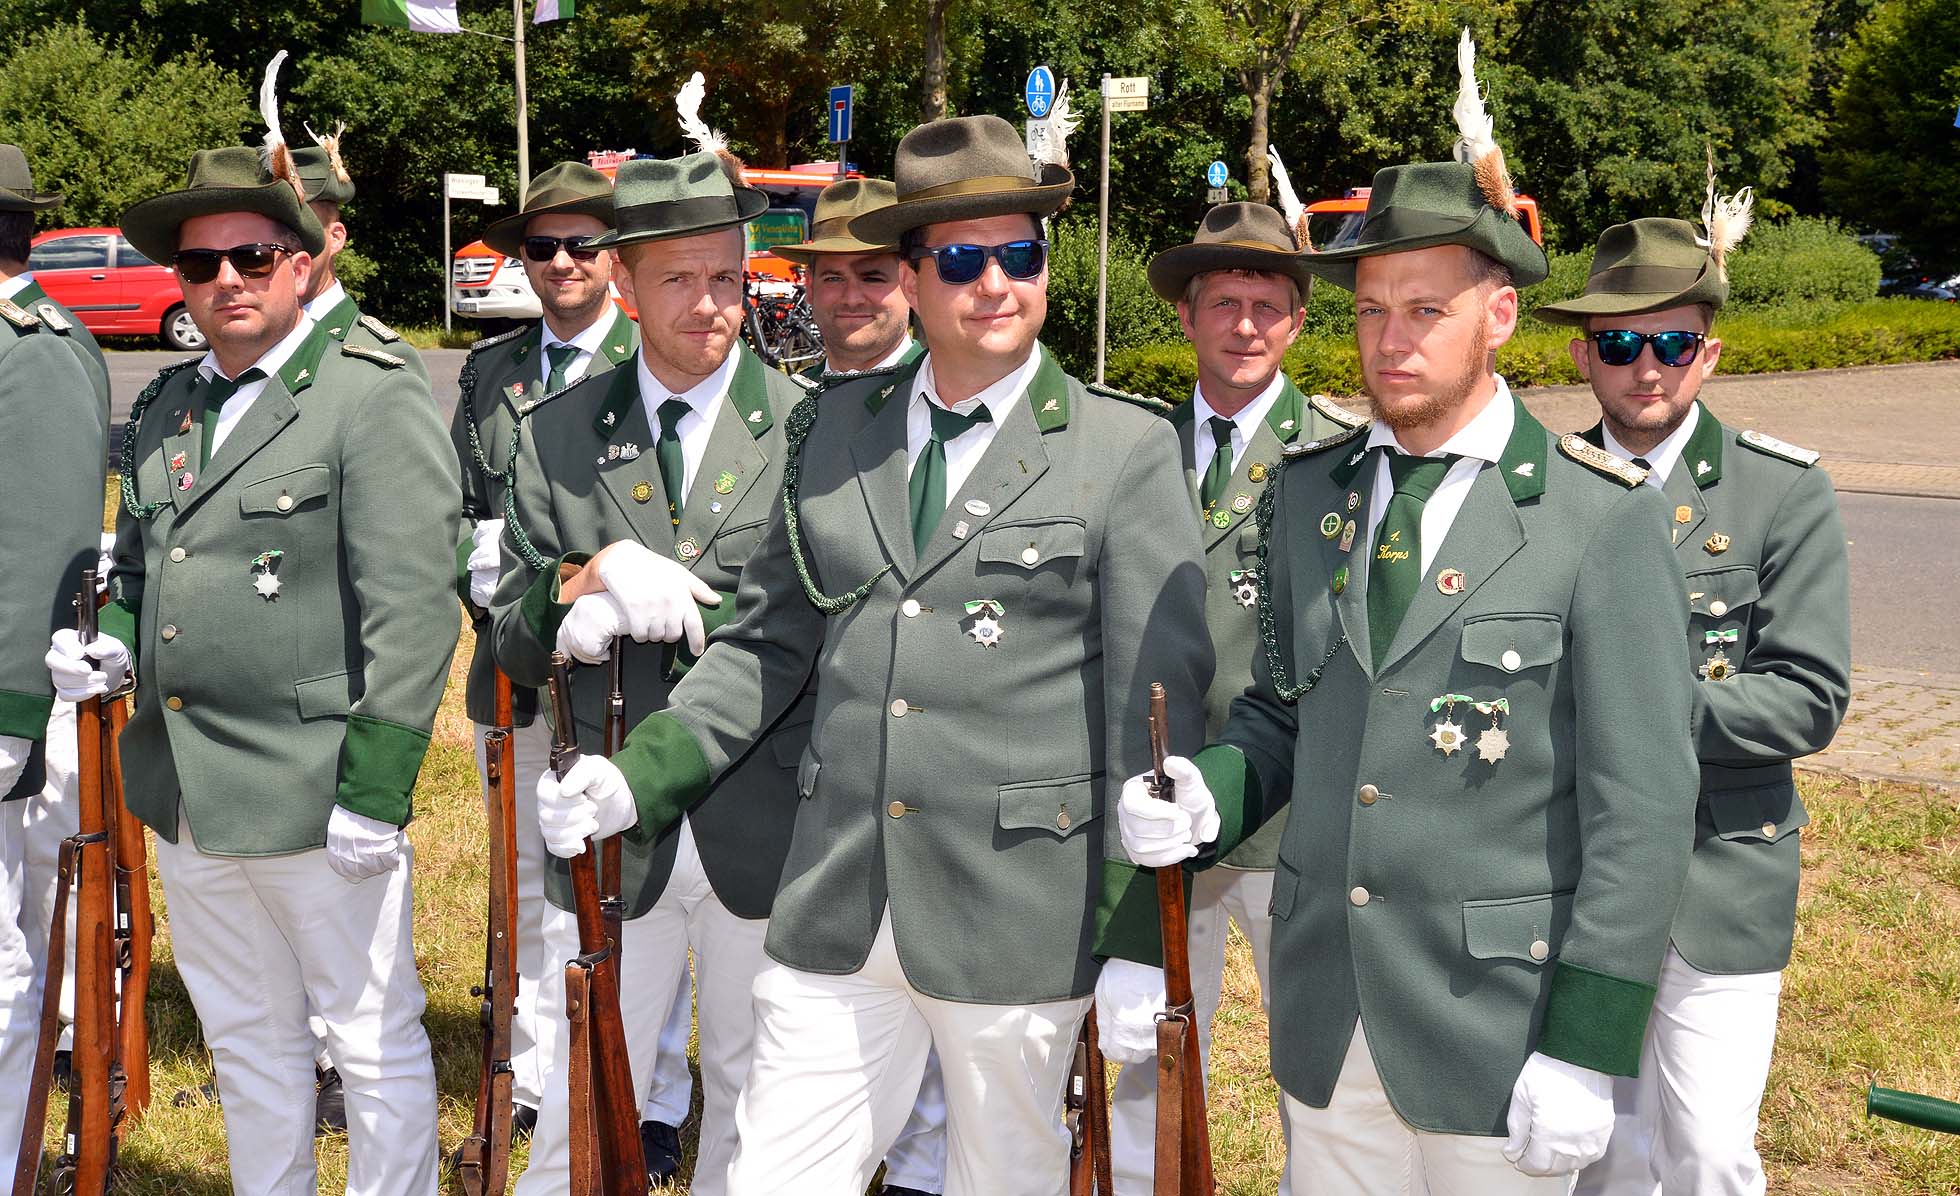 Jubiläums-Schützenfest am 2. Juli 2022 * das Antreten |  037